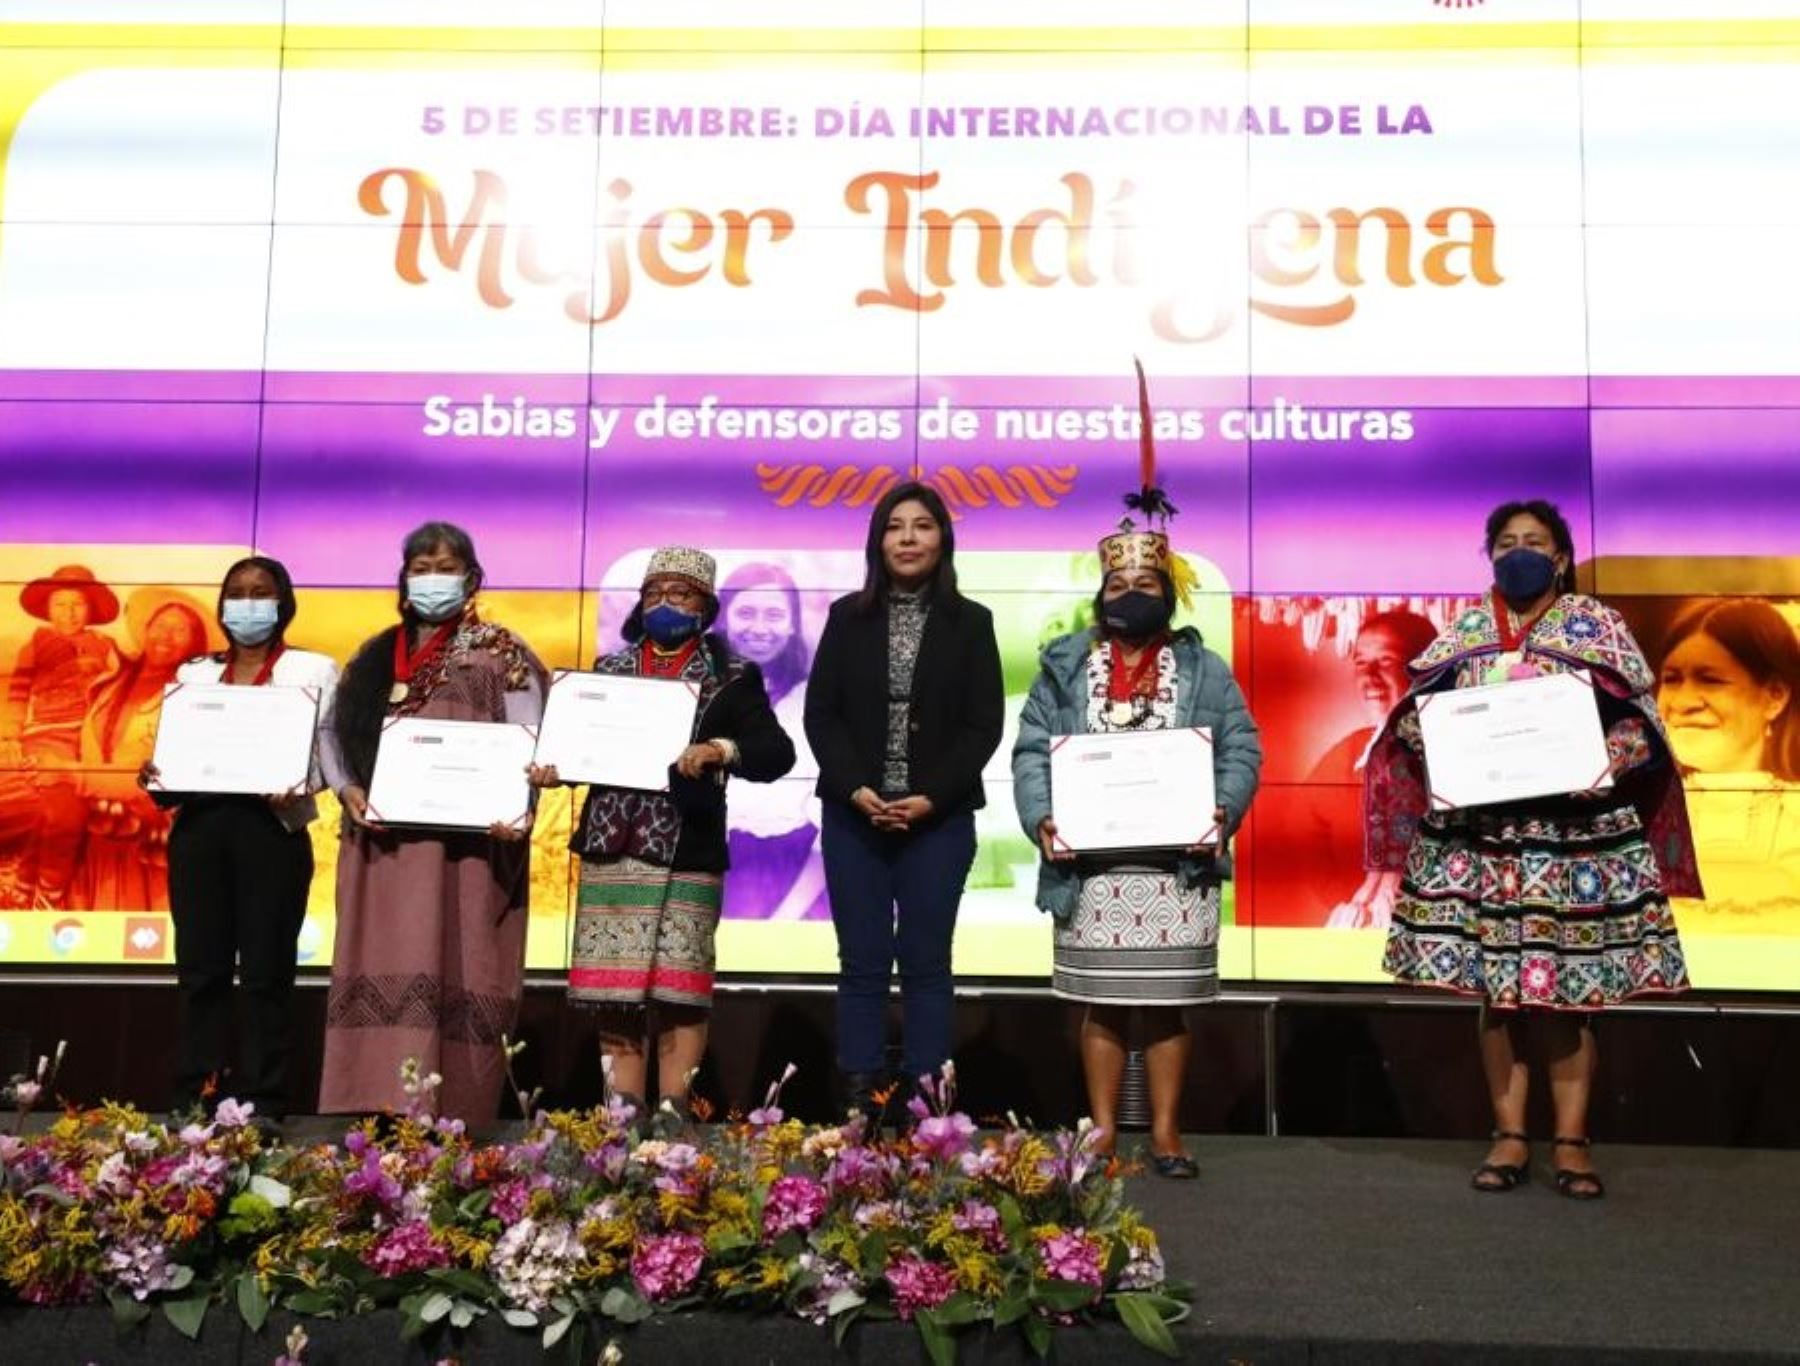 El Ministerio de Cultura distinguió a cinco lideresas al conemorarse hoy el Día Internacional de la Mujer Indígenas. Ellas destacan por promover desarrollo social y cultural de sus pueblos.  ANDINA/Difusión